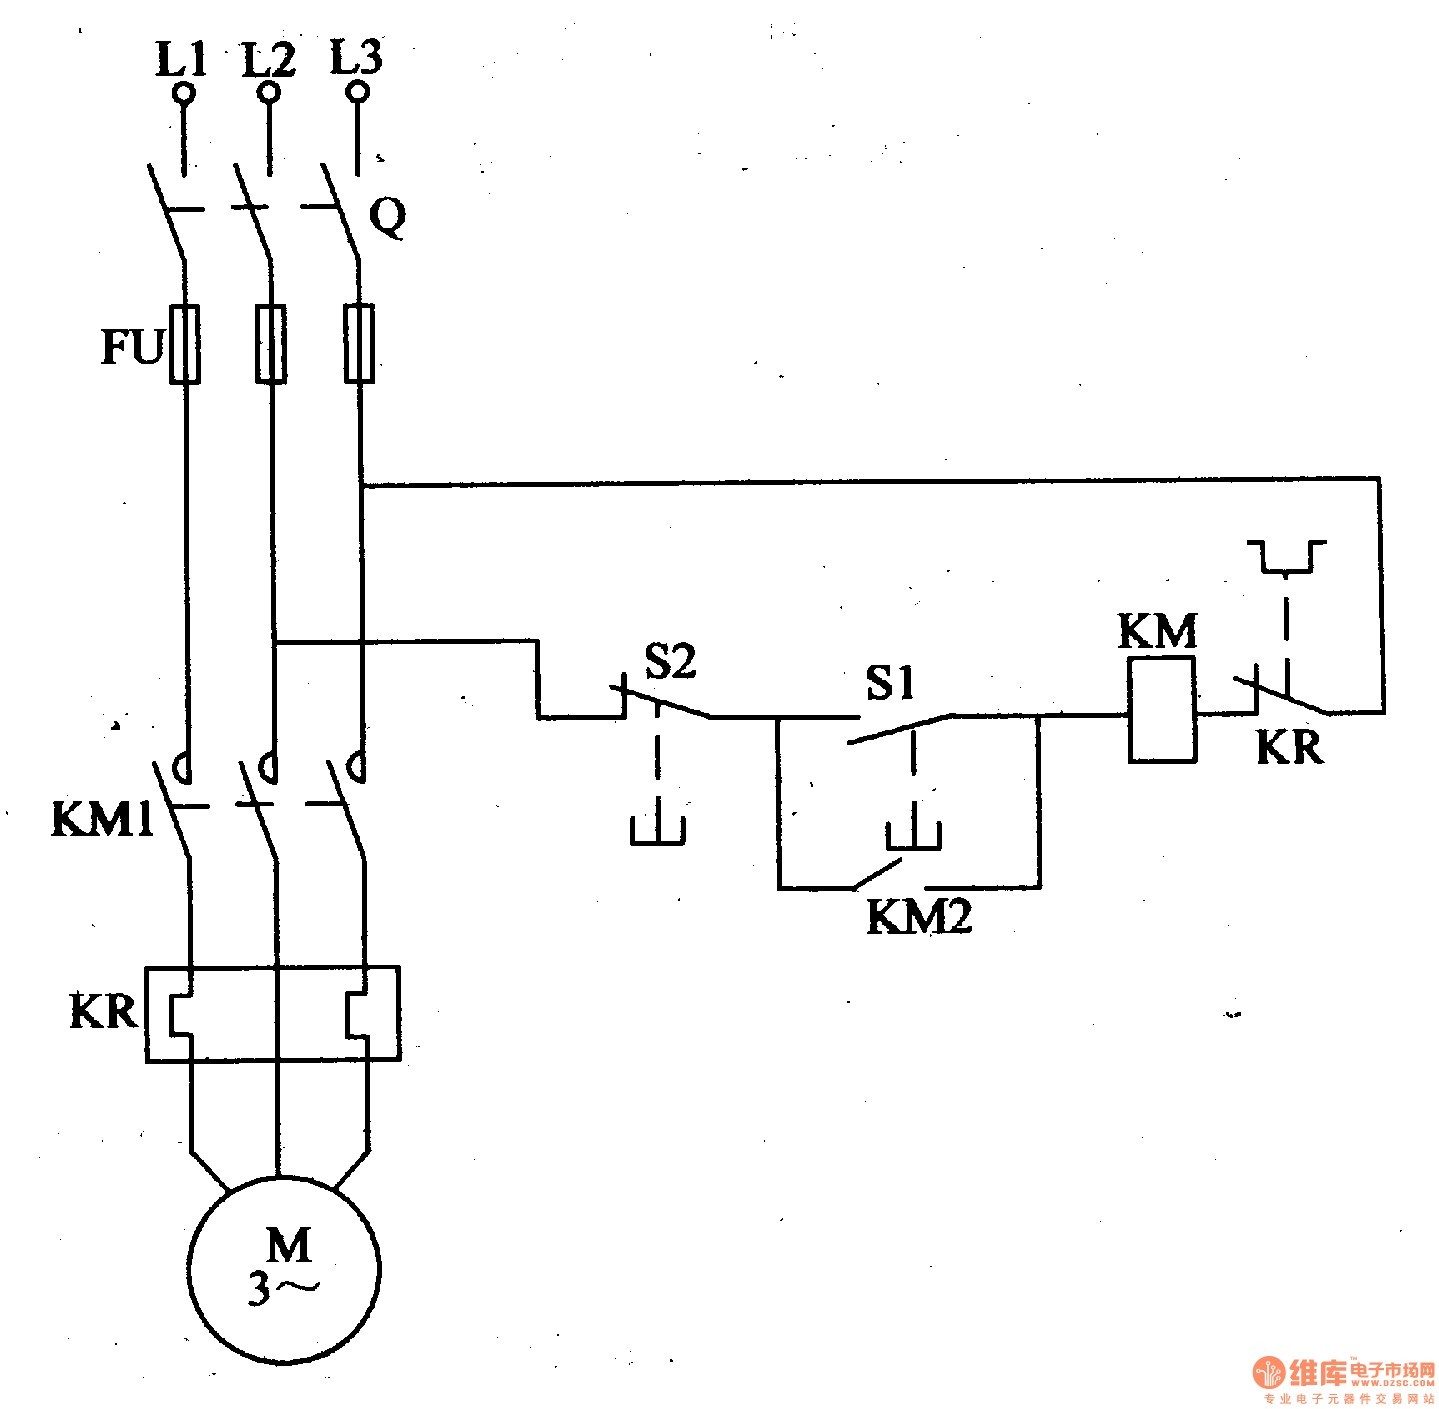 wiring diagram start stop motor control inspirationa electrical wiring start stop control circuit diagram zen basic